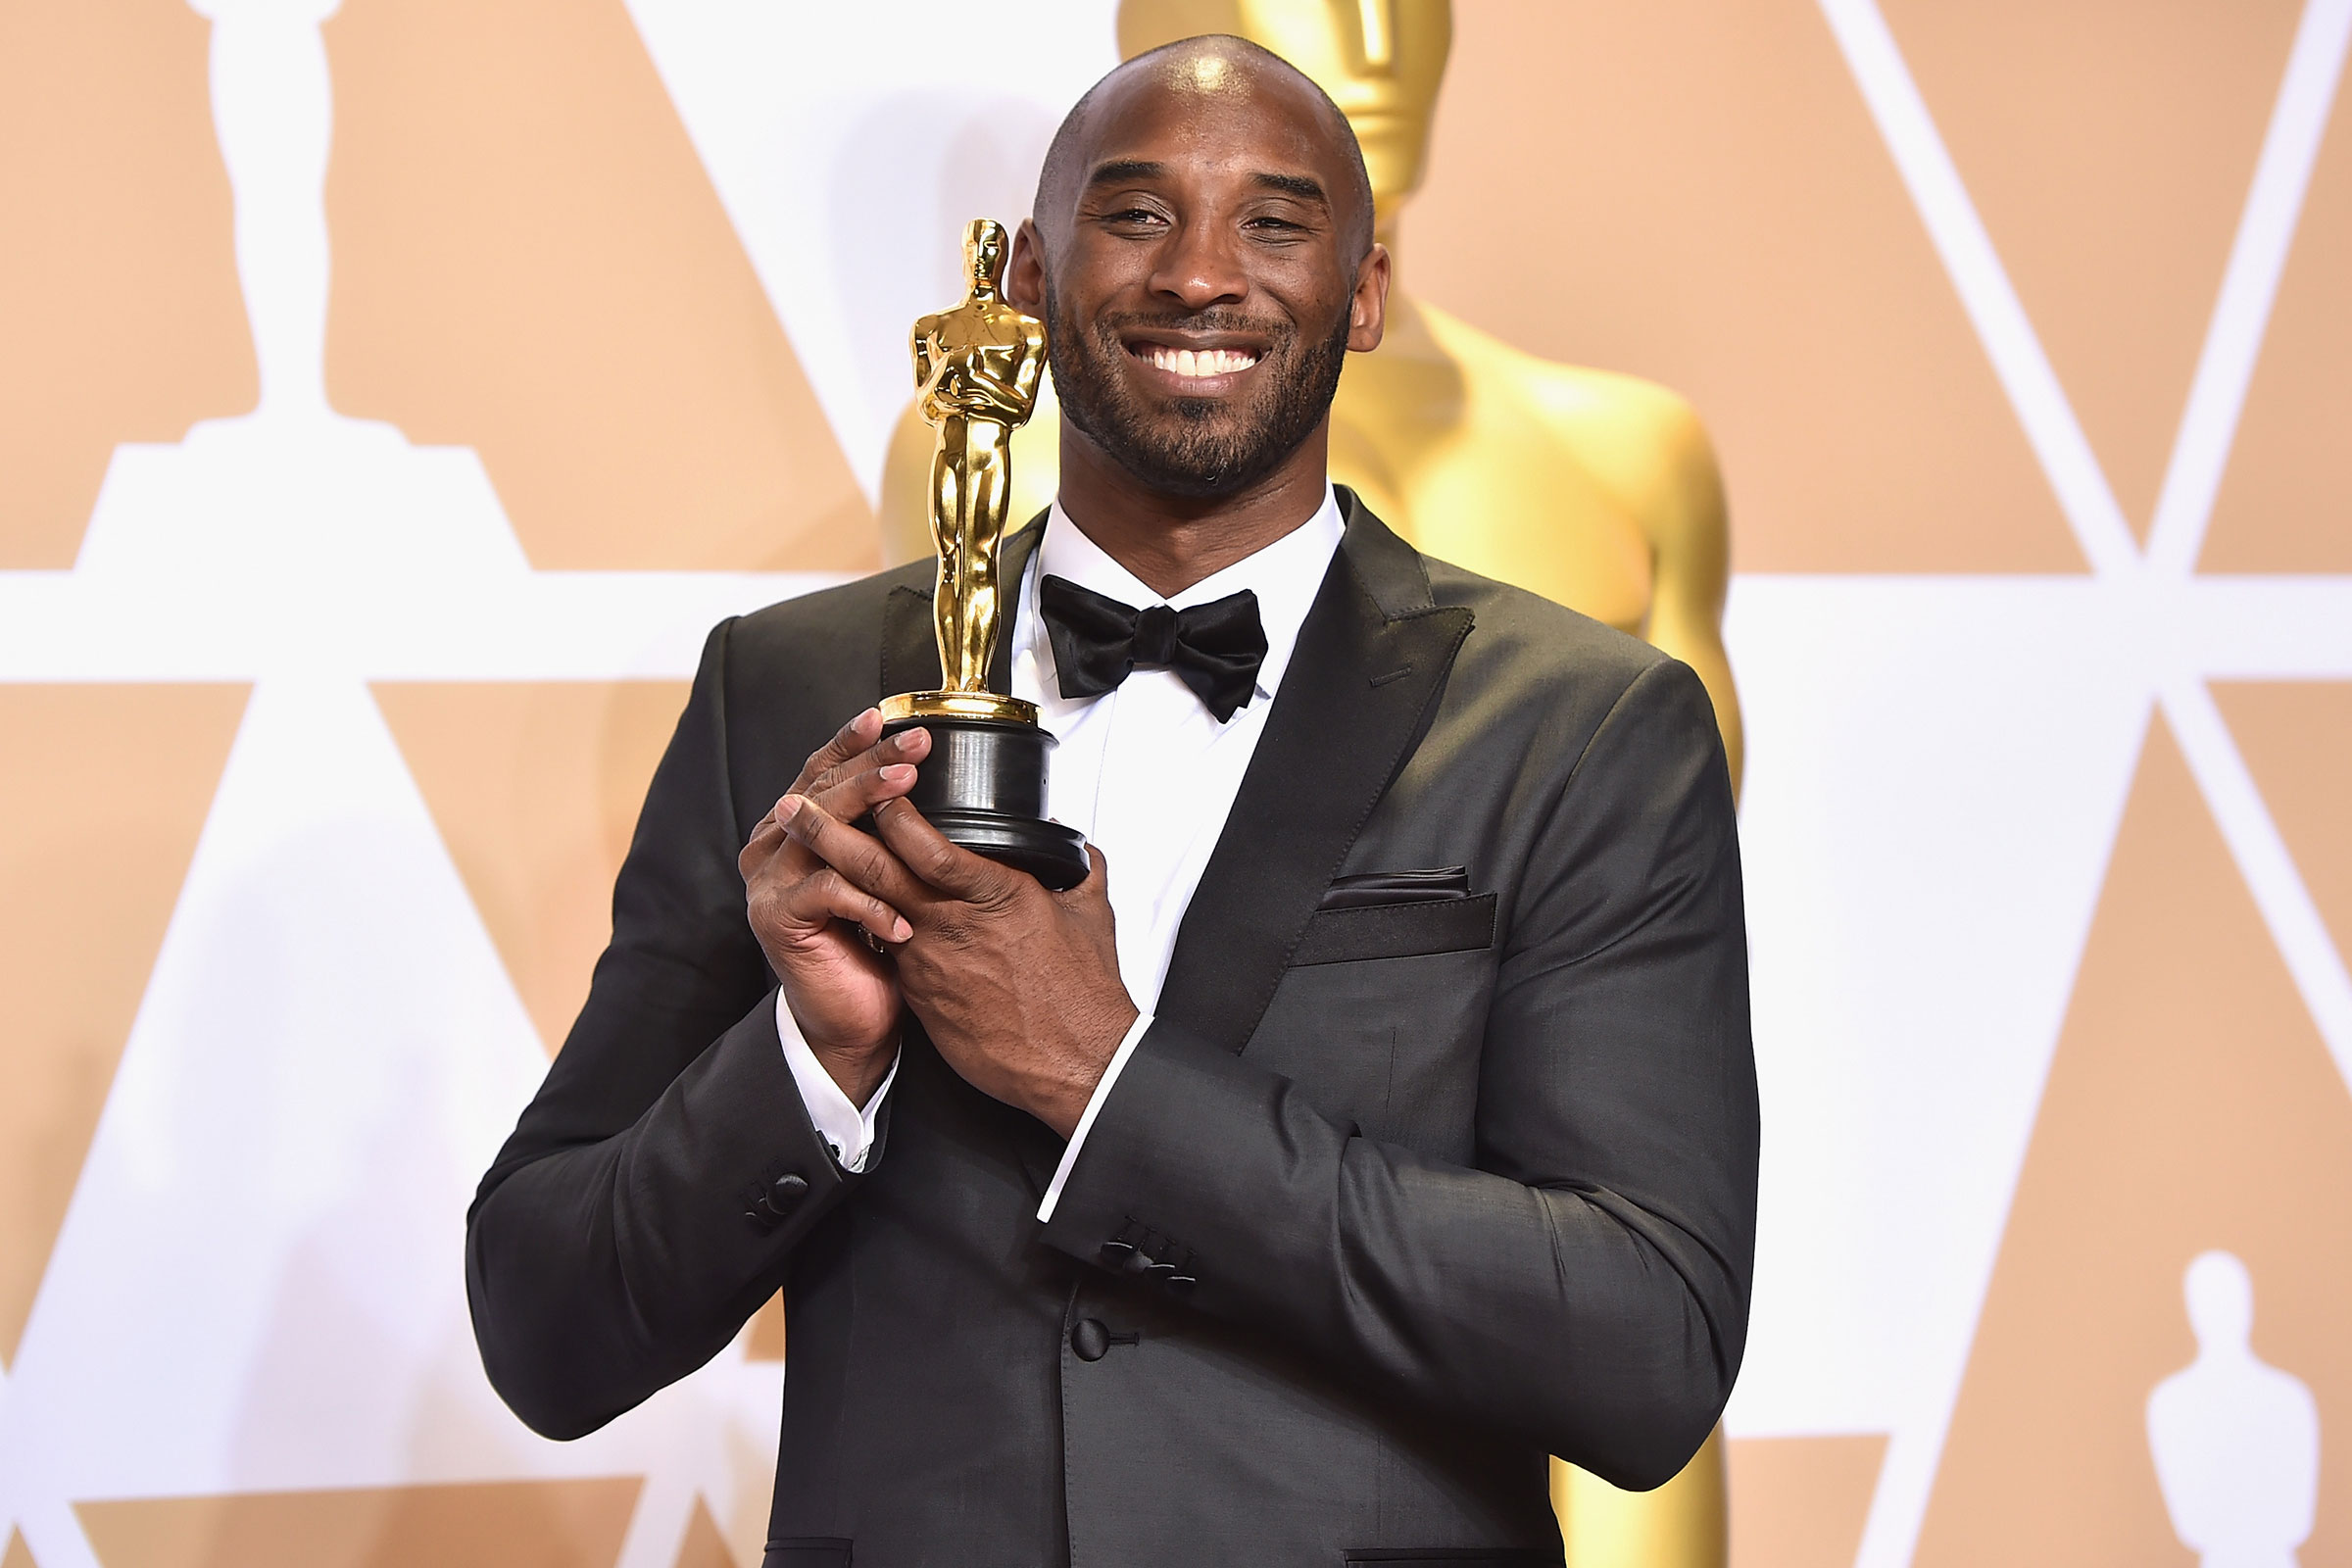 Mort de Kobe Bryant : un hommage lui sera fait lors des Oscars 2020